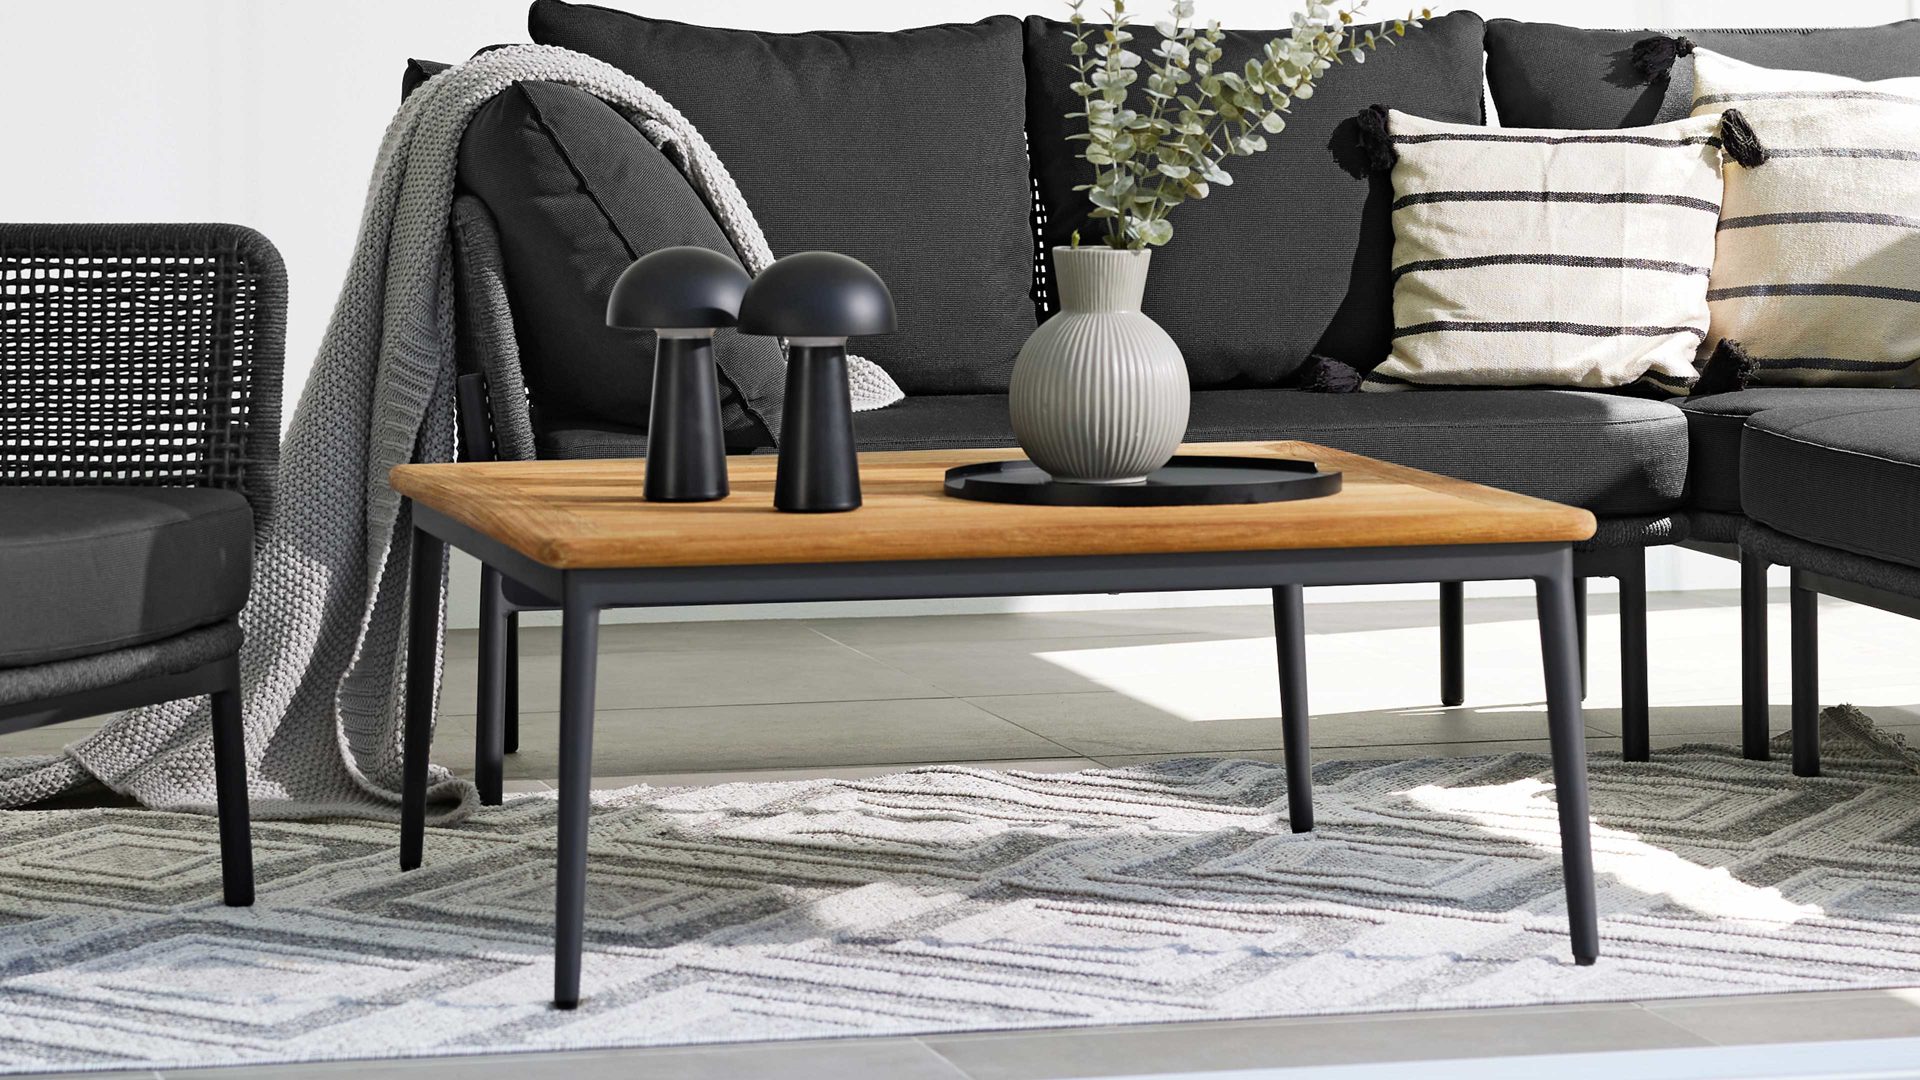 Gartentisch Interliving aus Holz in Holzfarben Interliving Gartenmöbel Serie 7005 – Lounge-Tisch G700 Teakholz & Aluminium - 89 x 89 cm